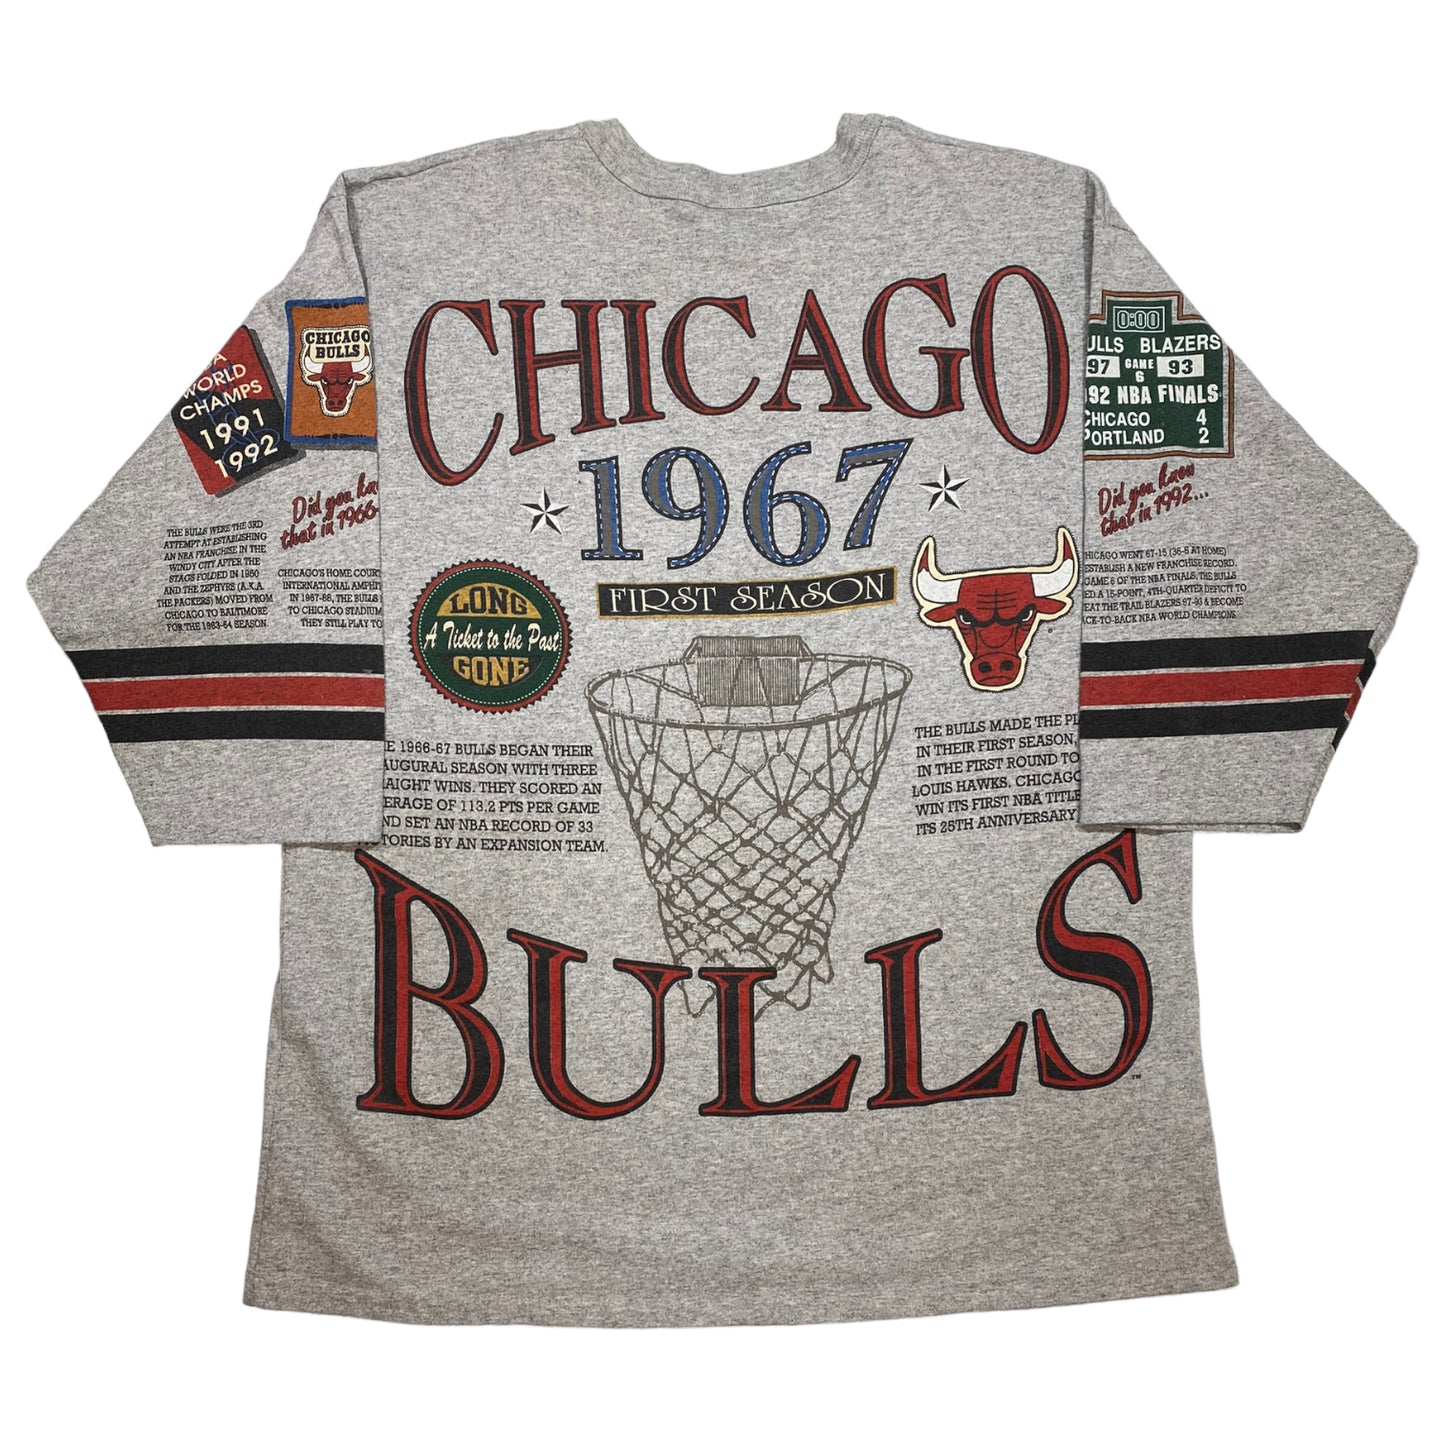 
                  
                    Long Gone - 91/92 Chicago Bulls
                  
                